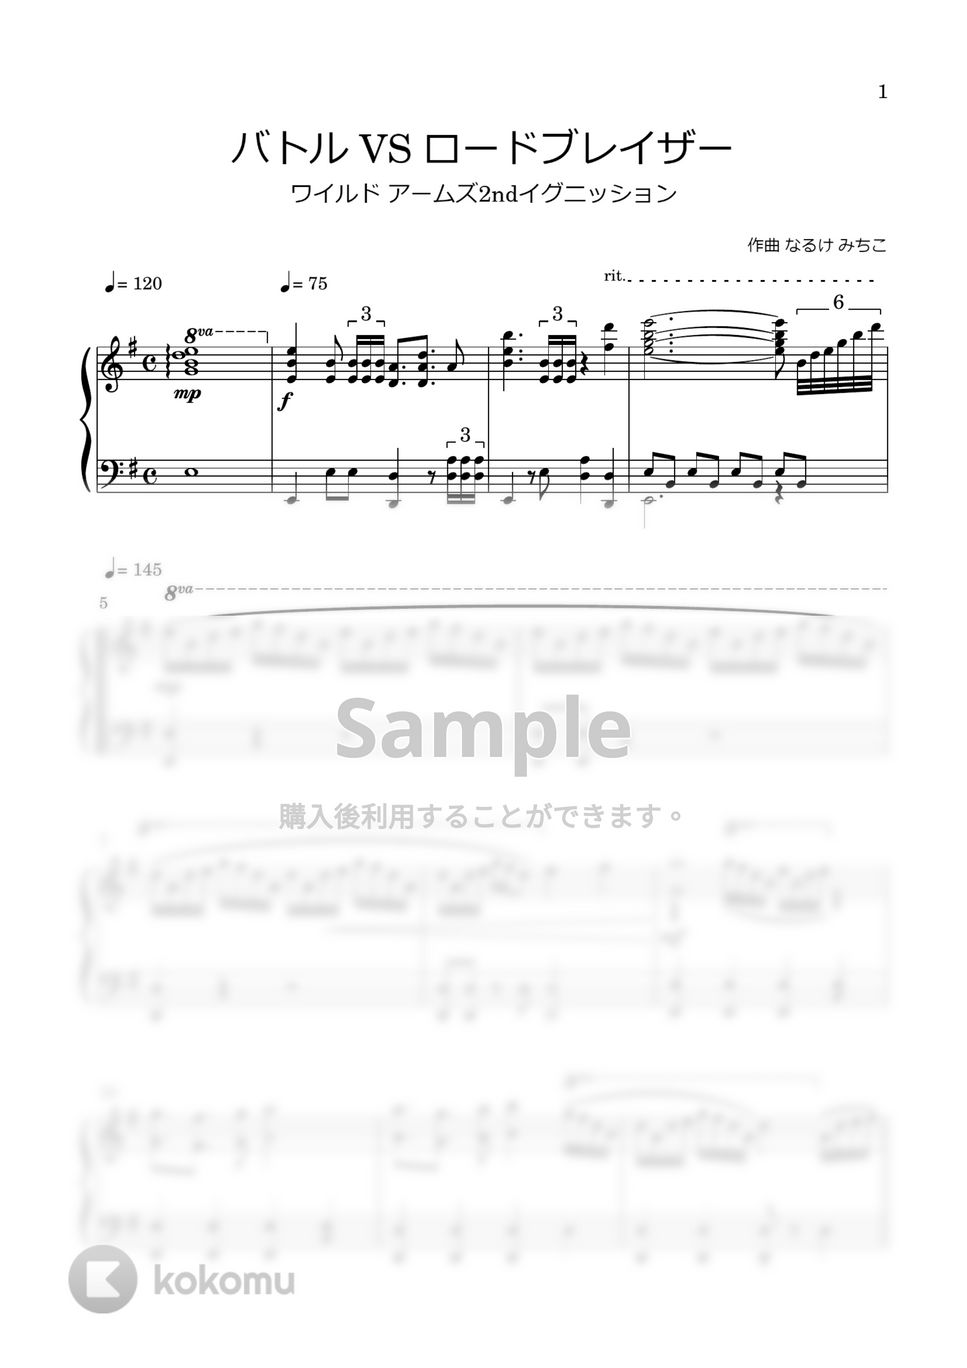 なるけ みちこ - バトル・VSロードブレイザー 楽譜 by tame channel